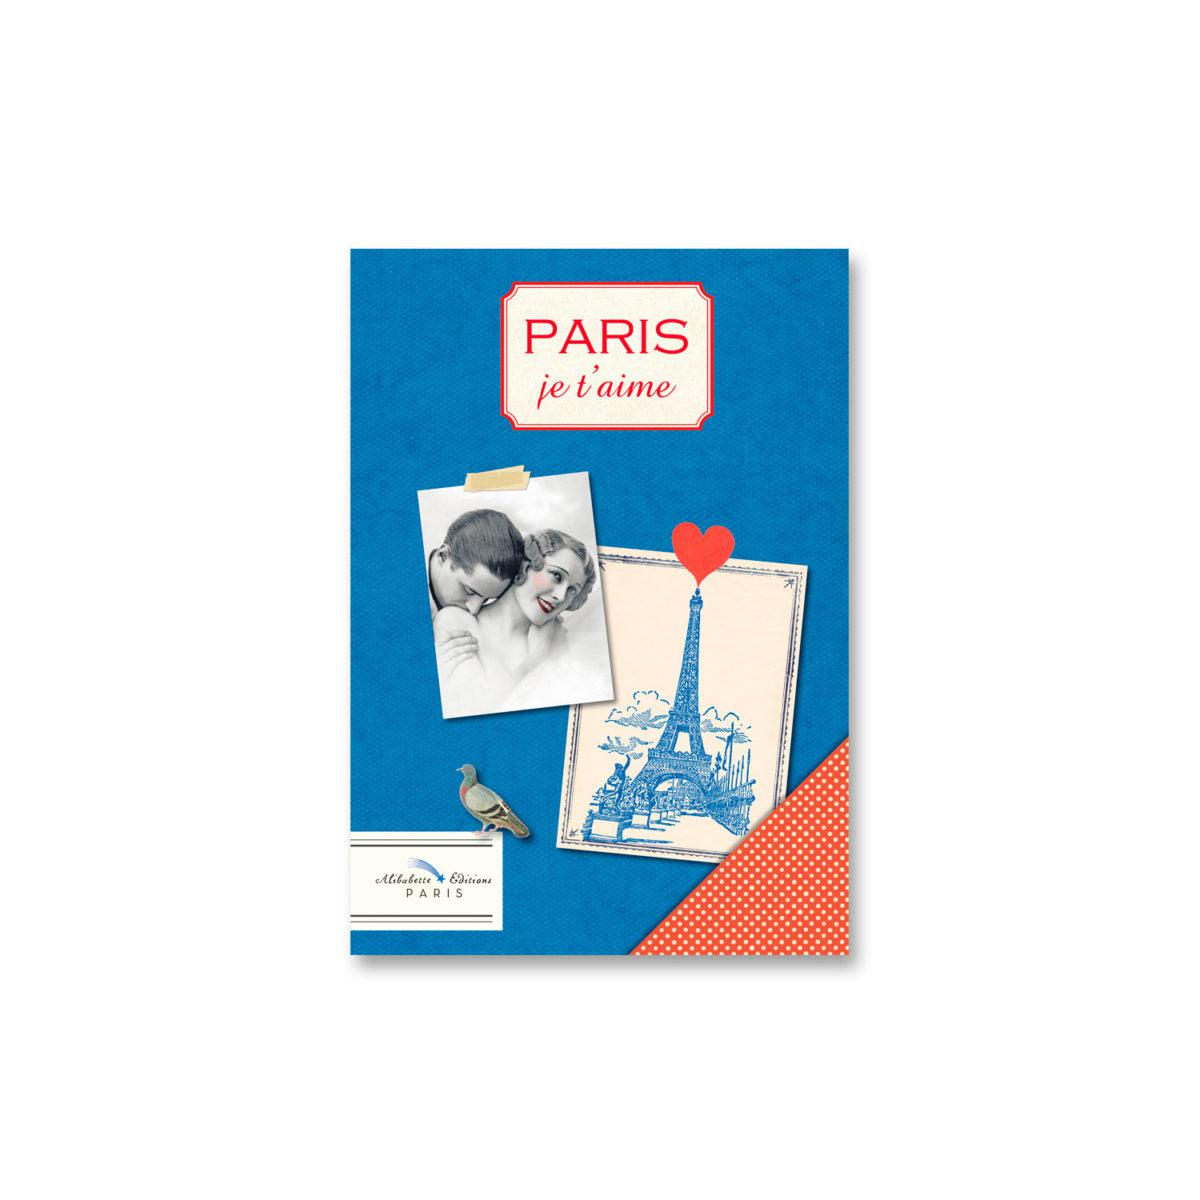 BAB Journal Intime Illustré 19 x 13-Journal Intime-Alibabette Editions-Paris je t'aime-Papeterie du Dôme